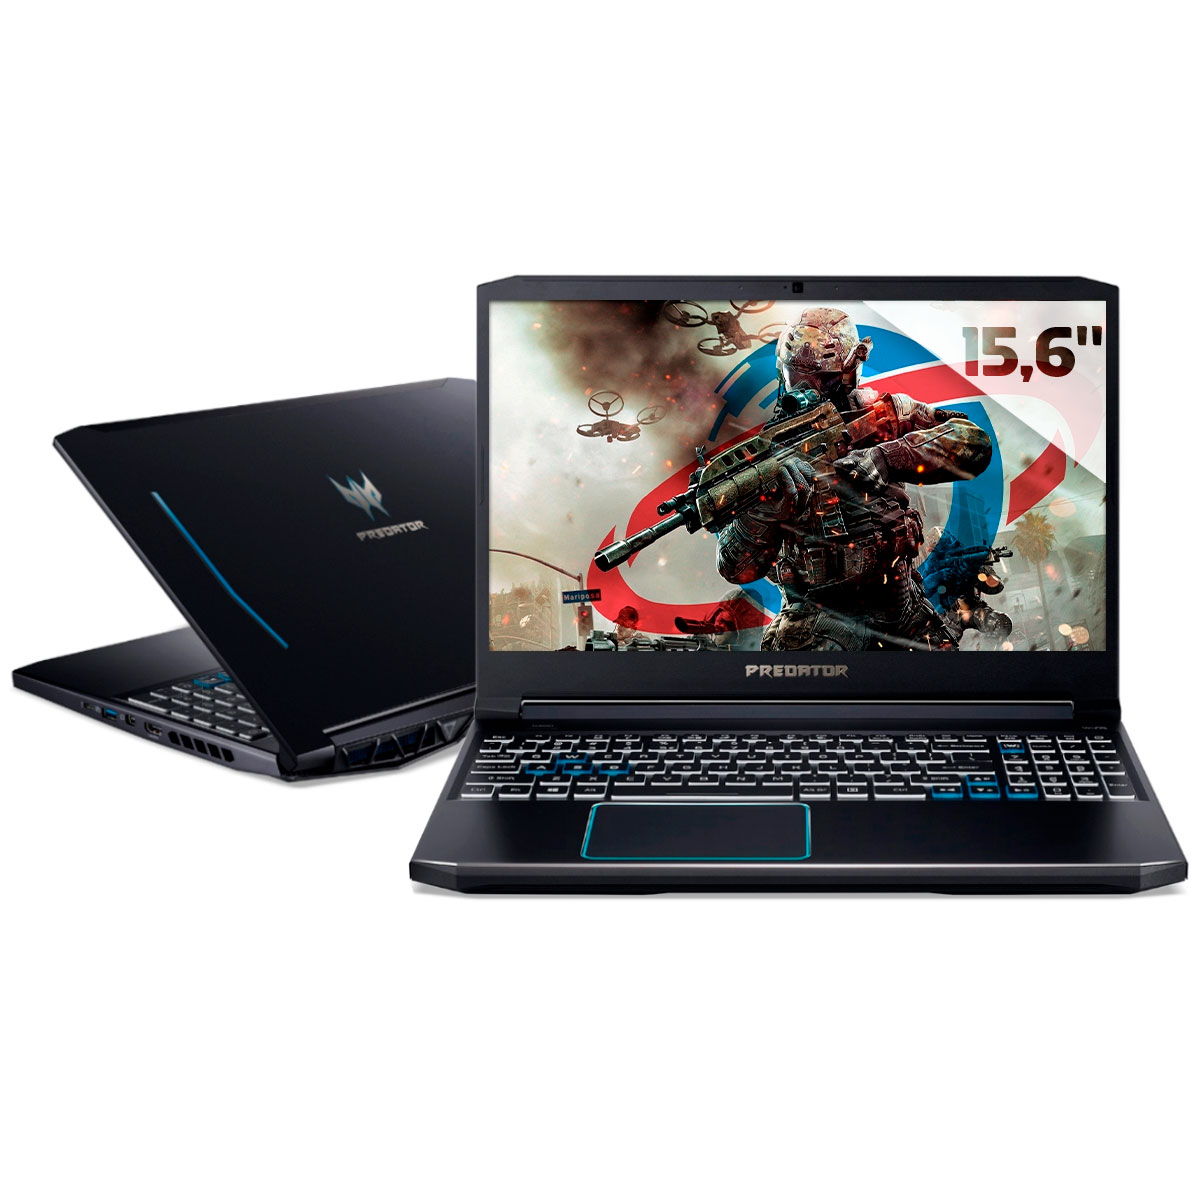 Notebook Acer Gaming Predator Helios 300 - Intel i7 10750H, 16GB, HD 1TB + SSD 256GB, GeForce RTX 2070 8GB, Tela 15.6